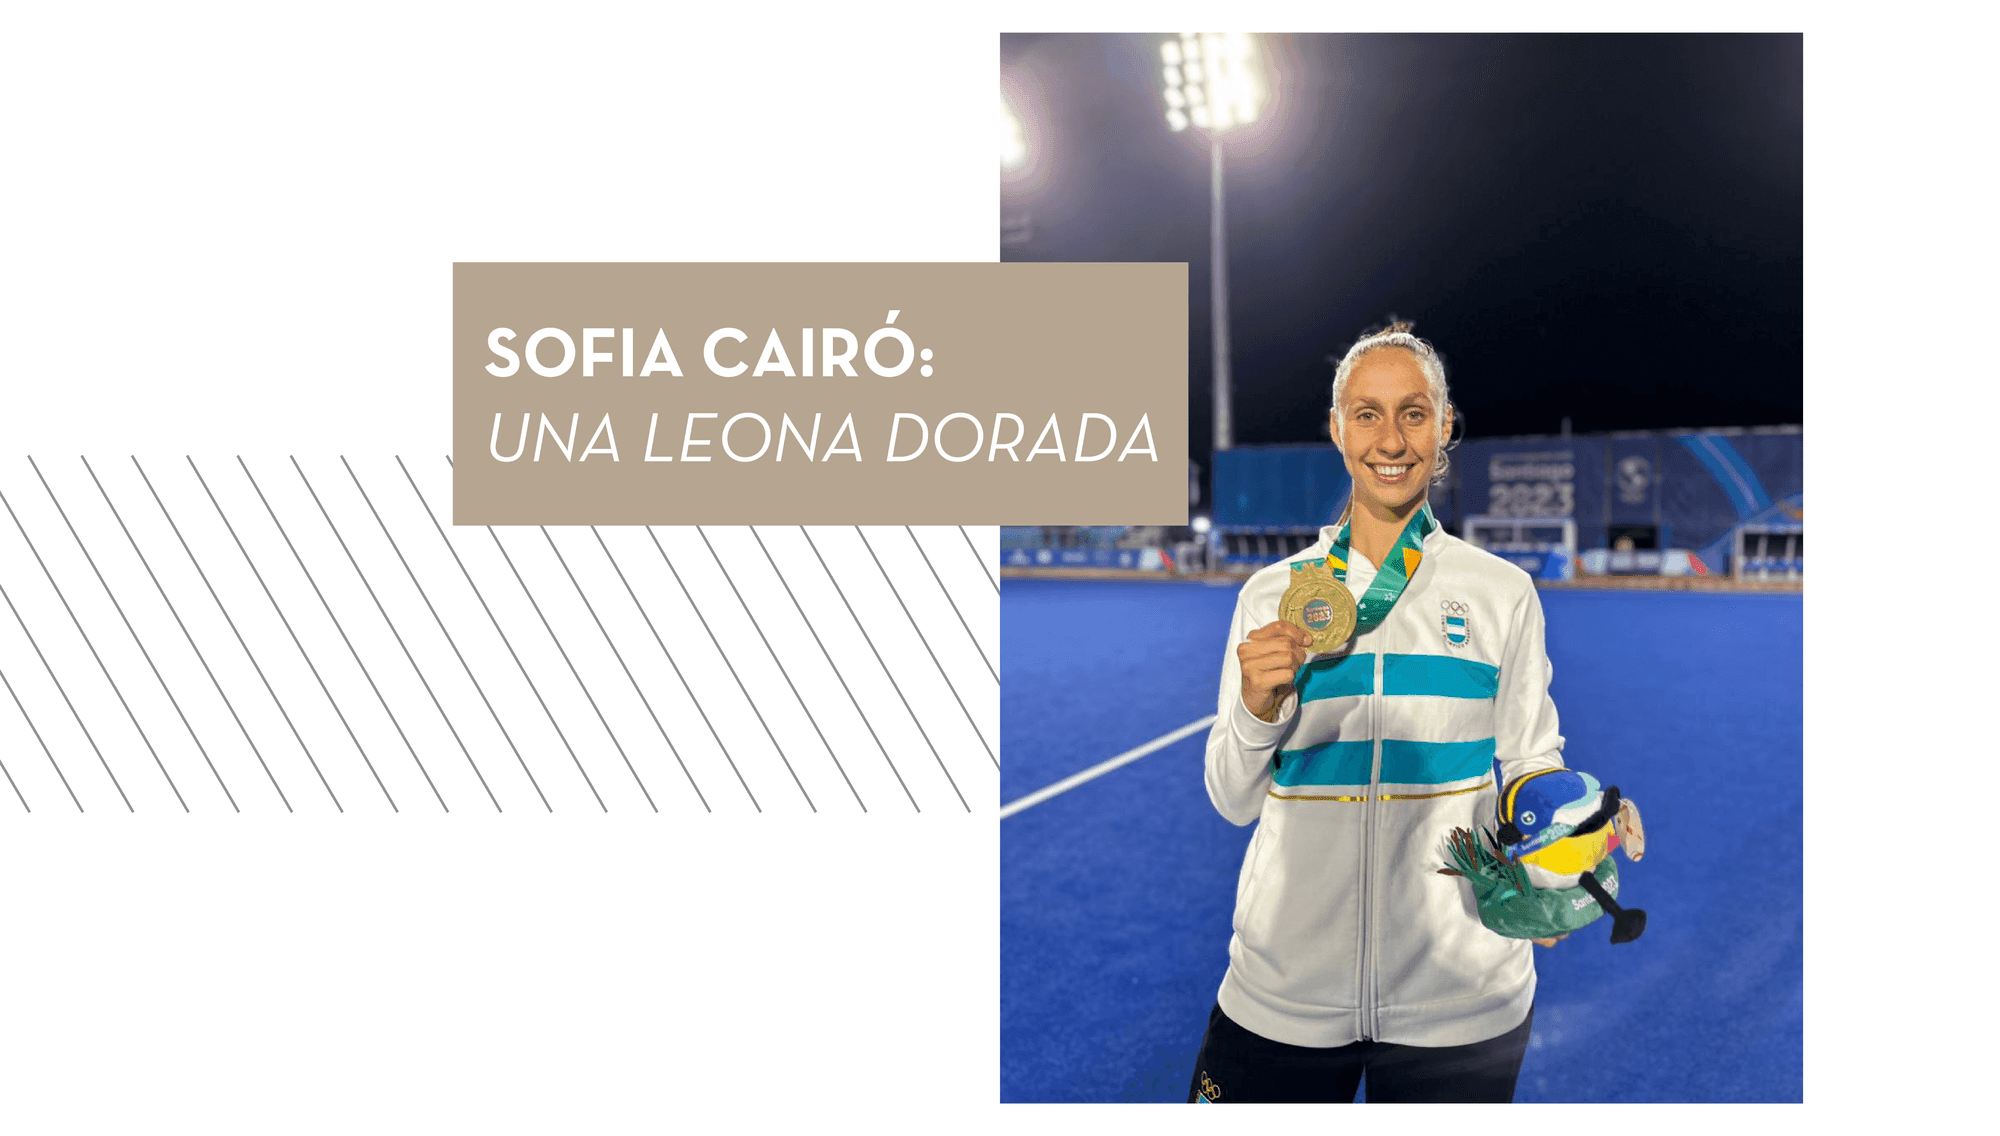 Sofía Cairó: una leona dorada